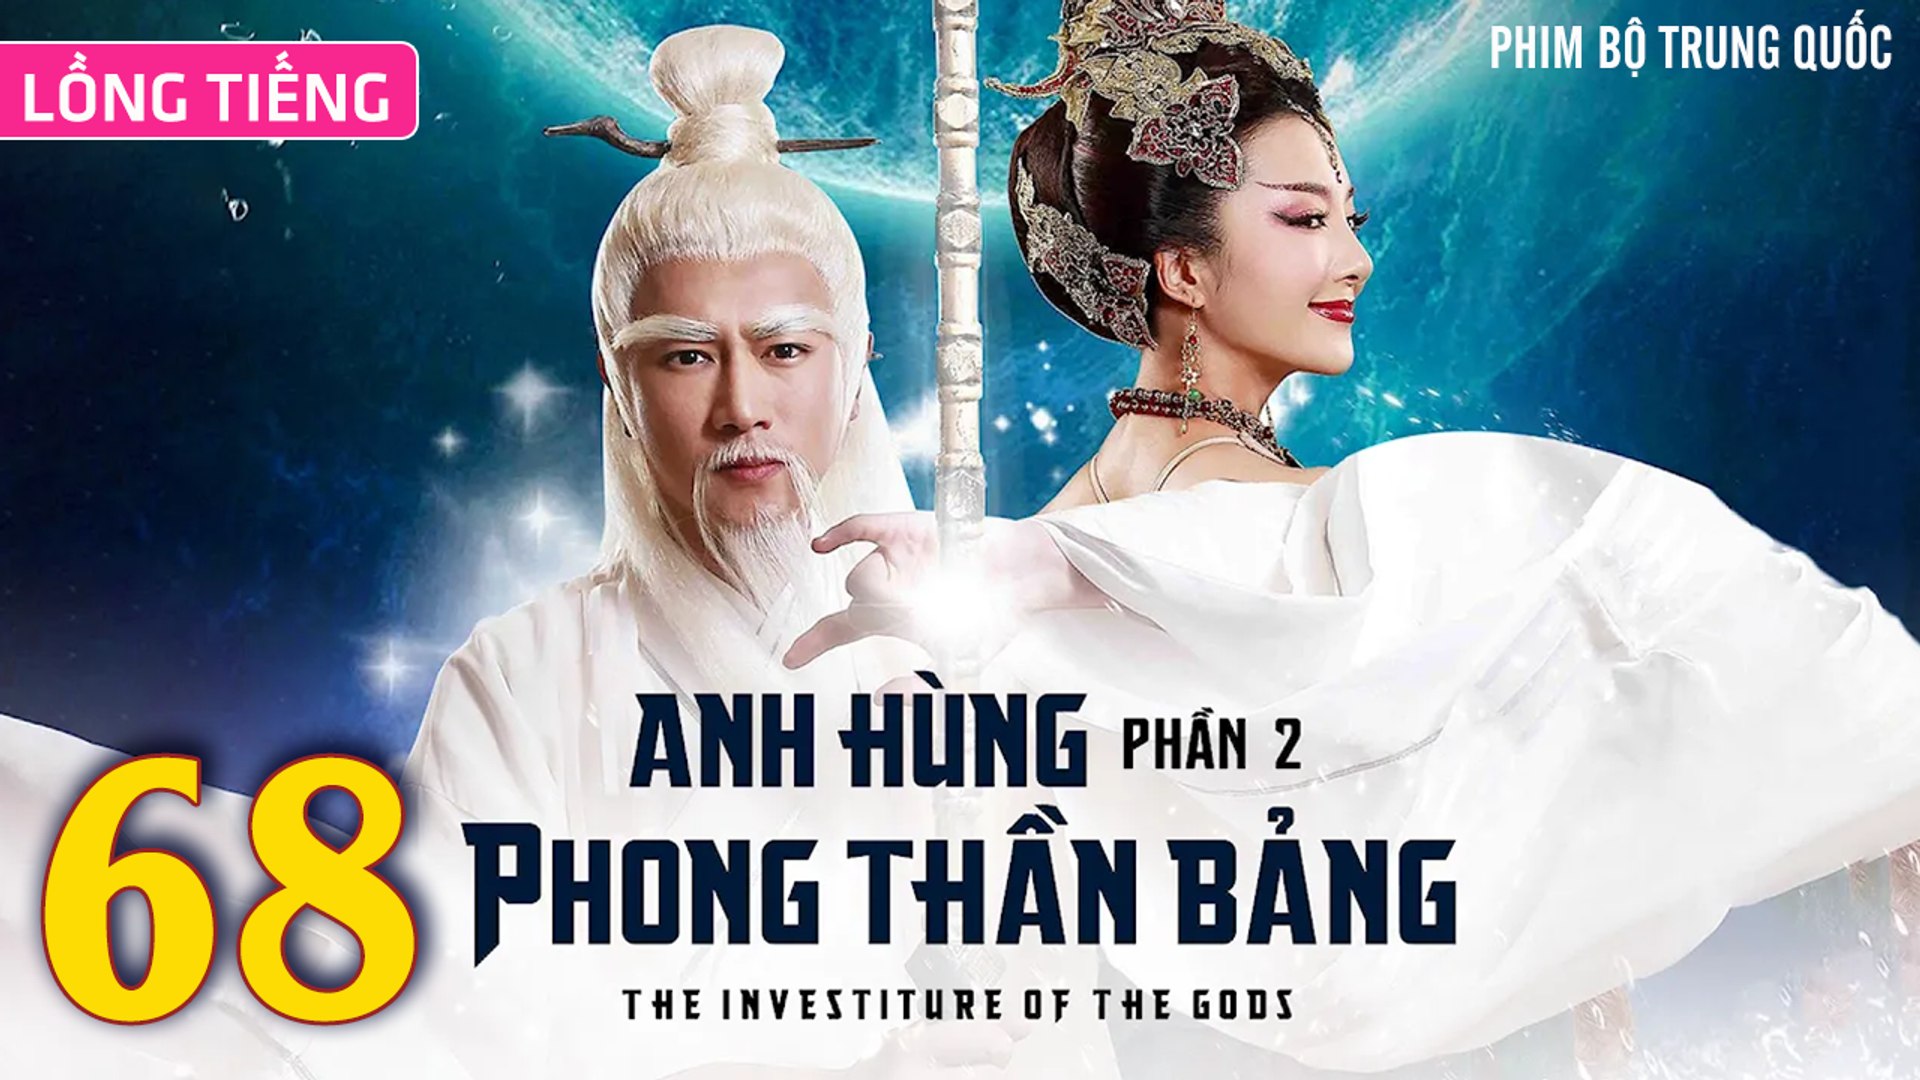 ⁣Phim Bộ Hay: ANH HÙNG PHONG THẦN BẢNG 2 - Tập 68 (Lồng Tiếng) | Phim Bộ Trung Quốc Hay Nhất 2023